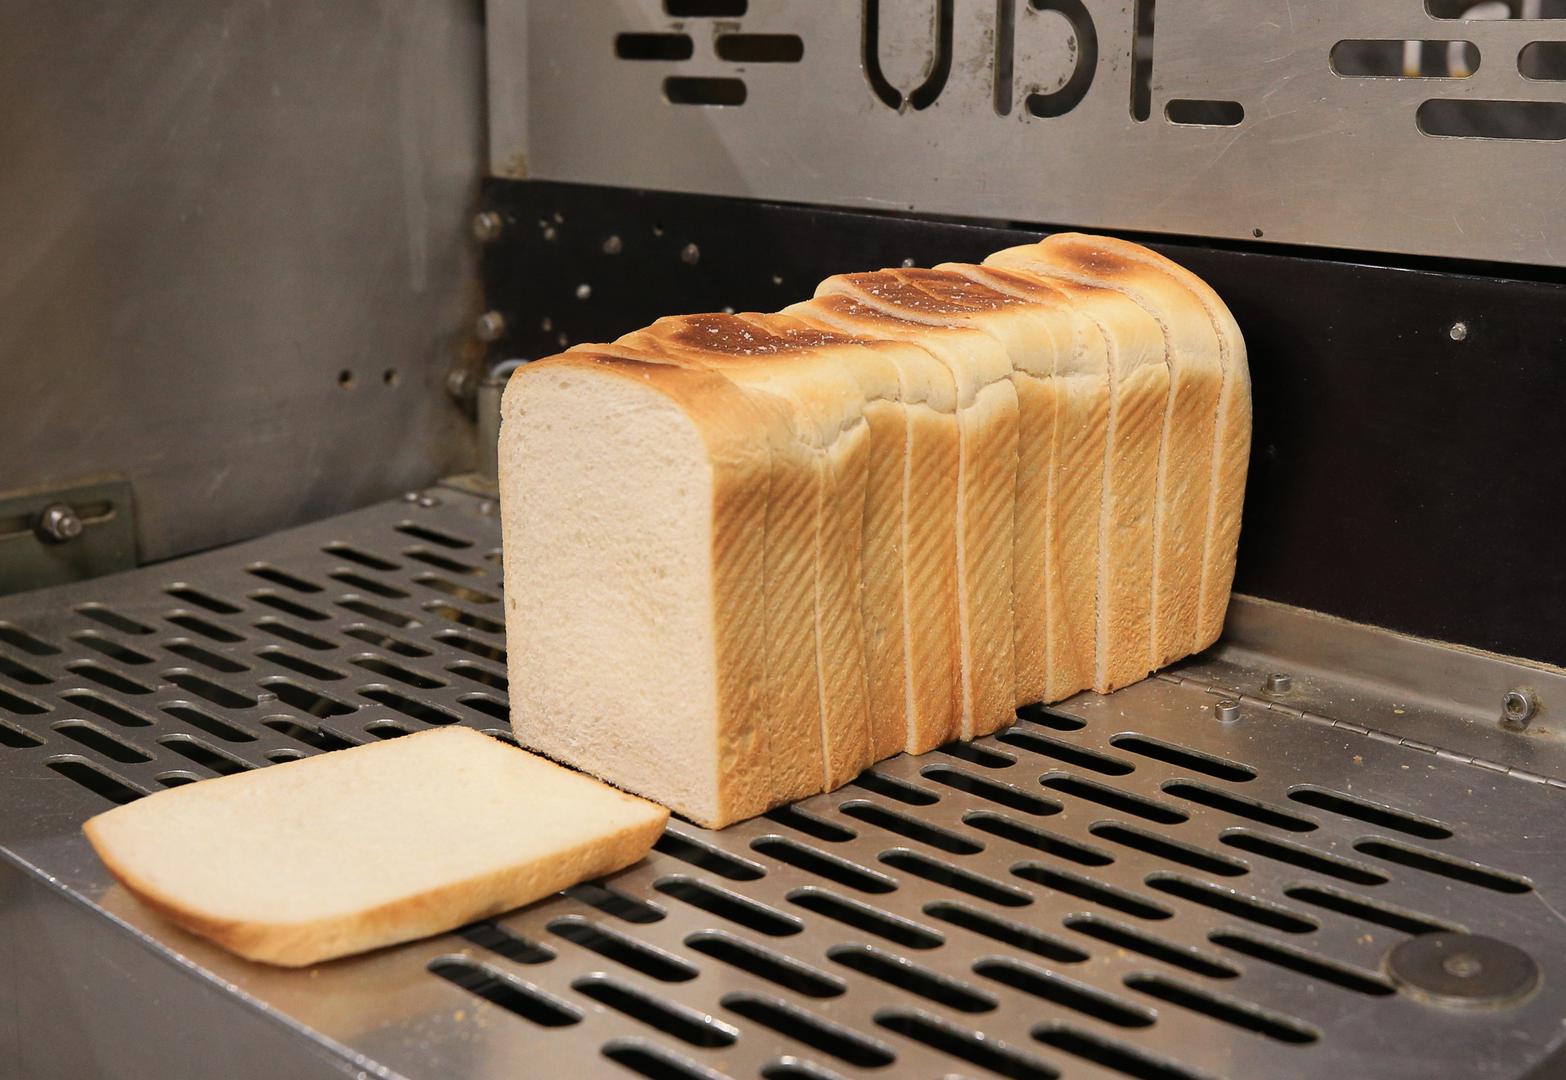 Narezani kruh, koji je danas glavni dio smočnice, prvi put je prodan 1928. Prvu takvu štrucu kruha proizveo je Otto Rohwedder u Chillicotheu, Missouri, u srpnju 1928. Rohwedder je bio draguljar, a pekari su ga kritizirali zbog njegove ideje; mislili su da će se narezani kruh prebrzo pokvariti.